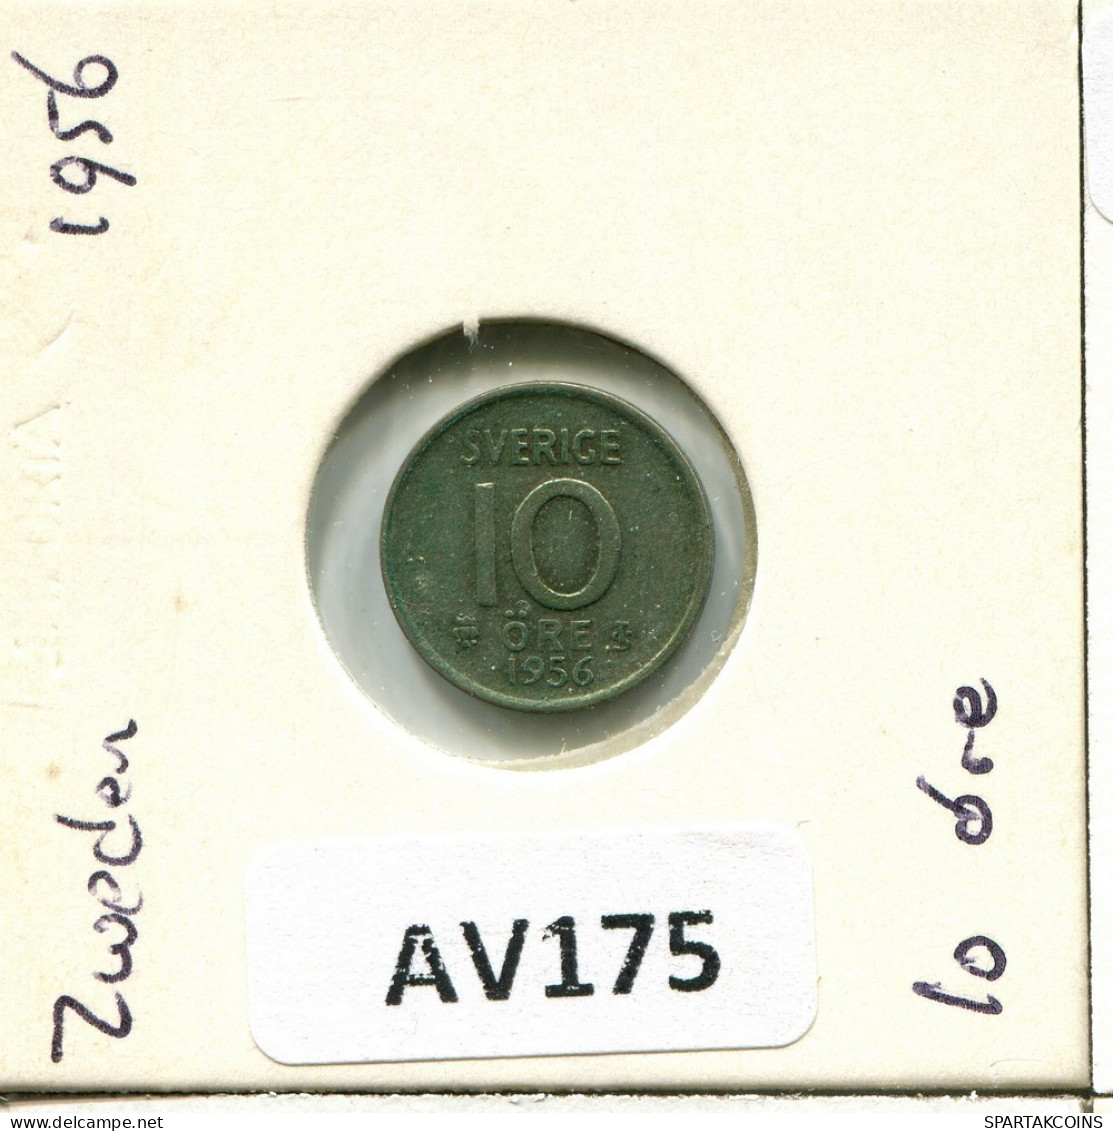 10 ORE 1956 SWEDEN Coin #AV175.U.A - Schweden